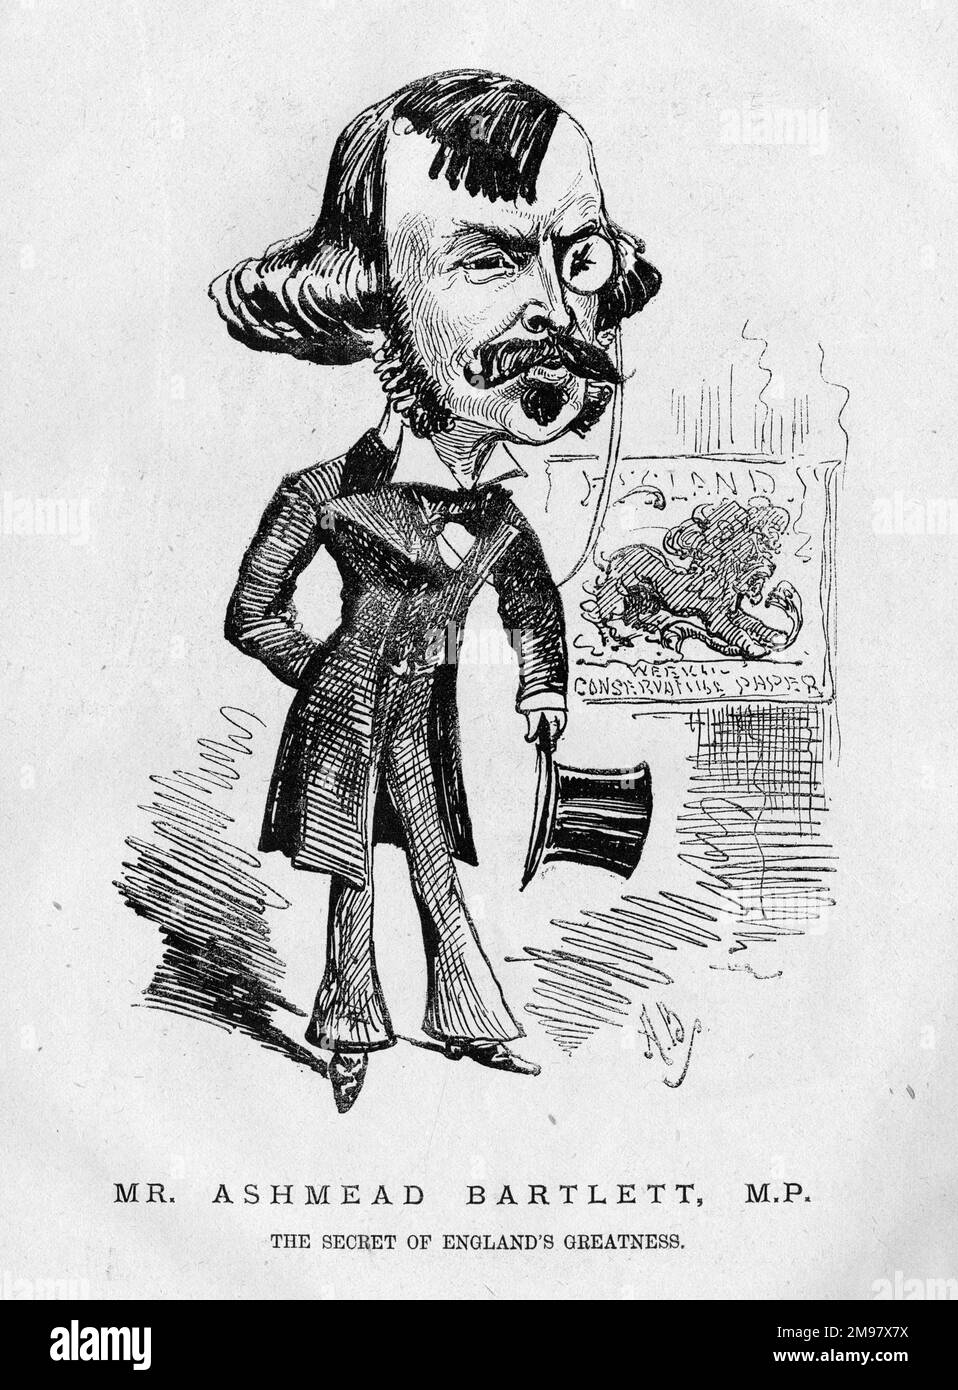 Karikatur von Sir Ellis Ashmead Bartlett (1849-1902), dem in den USA geborenen britischen konservativen Politiker, Abgeordneter von 1880 bis 1902. Beschrieben als das Geheimnis von Englands Größe. Stockfoto